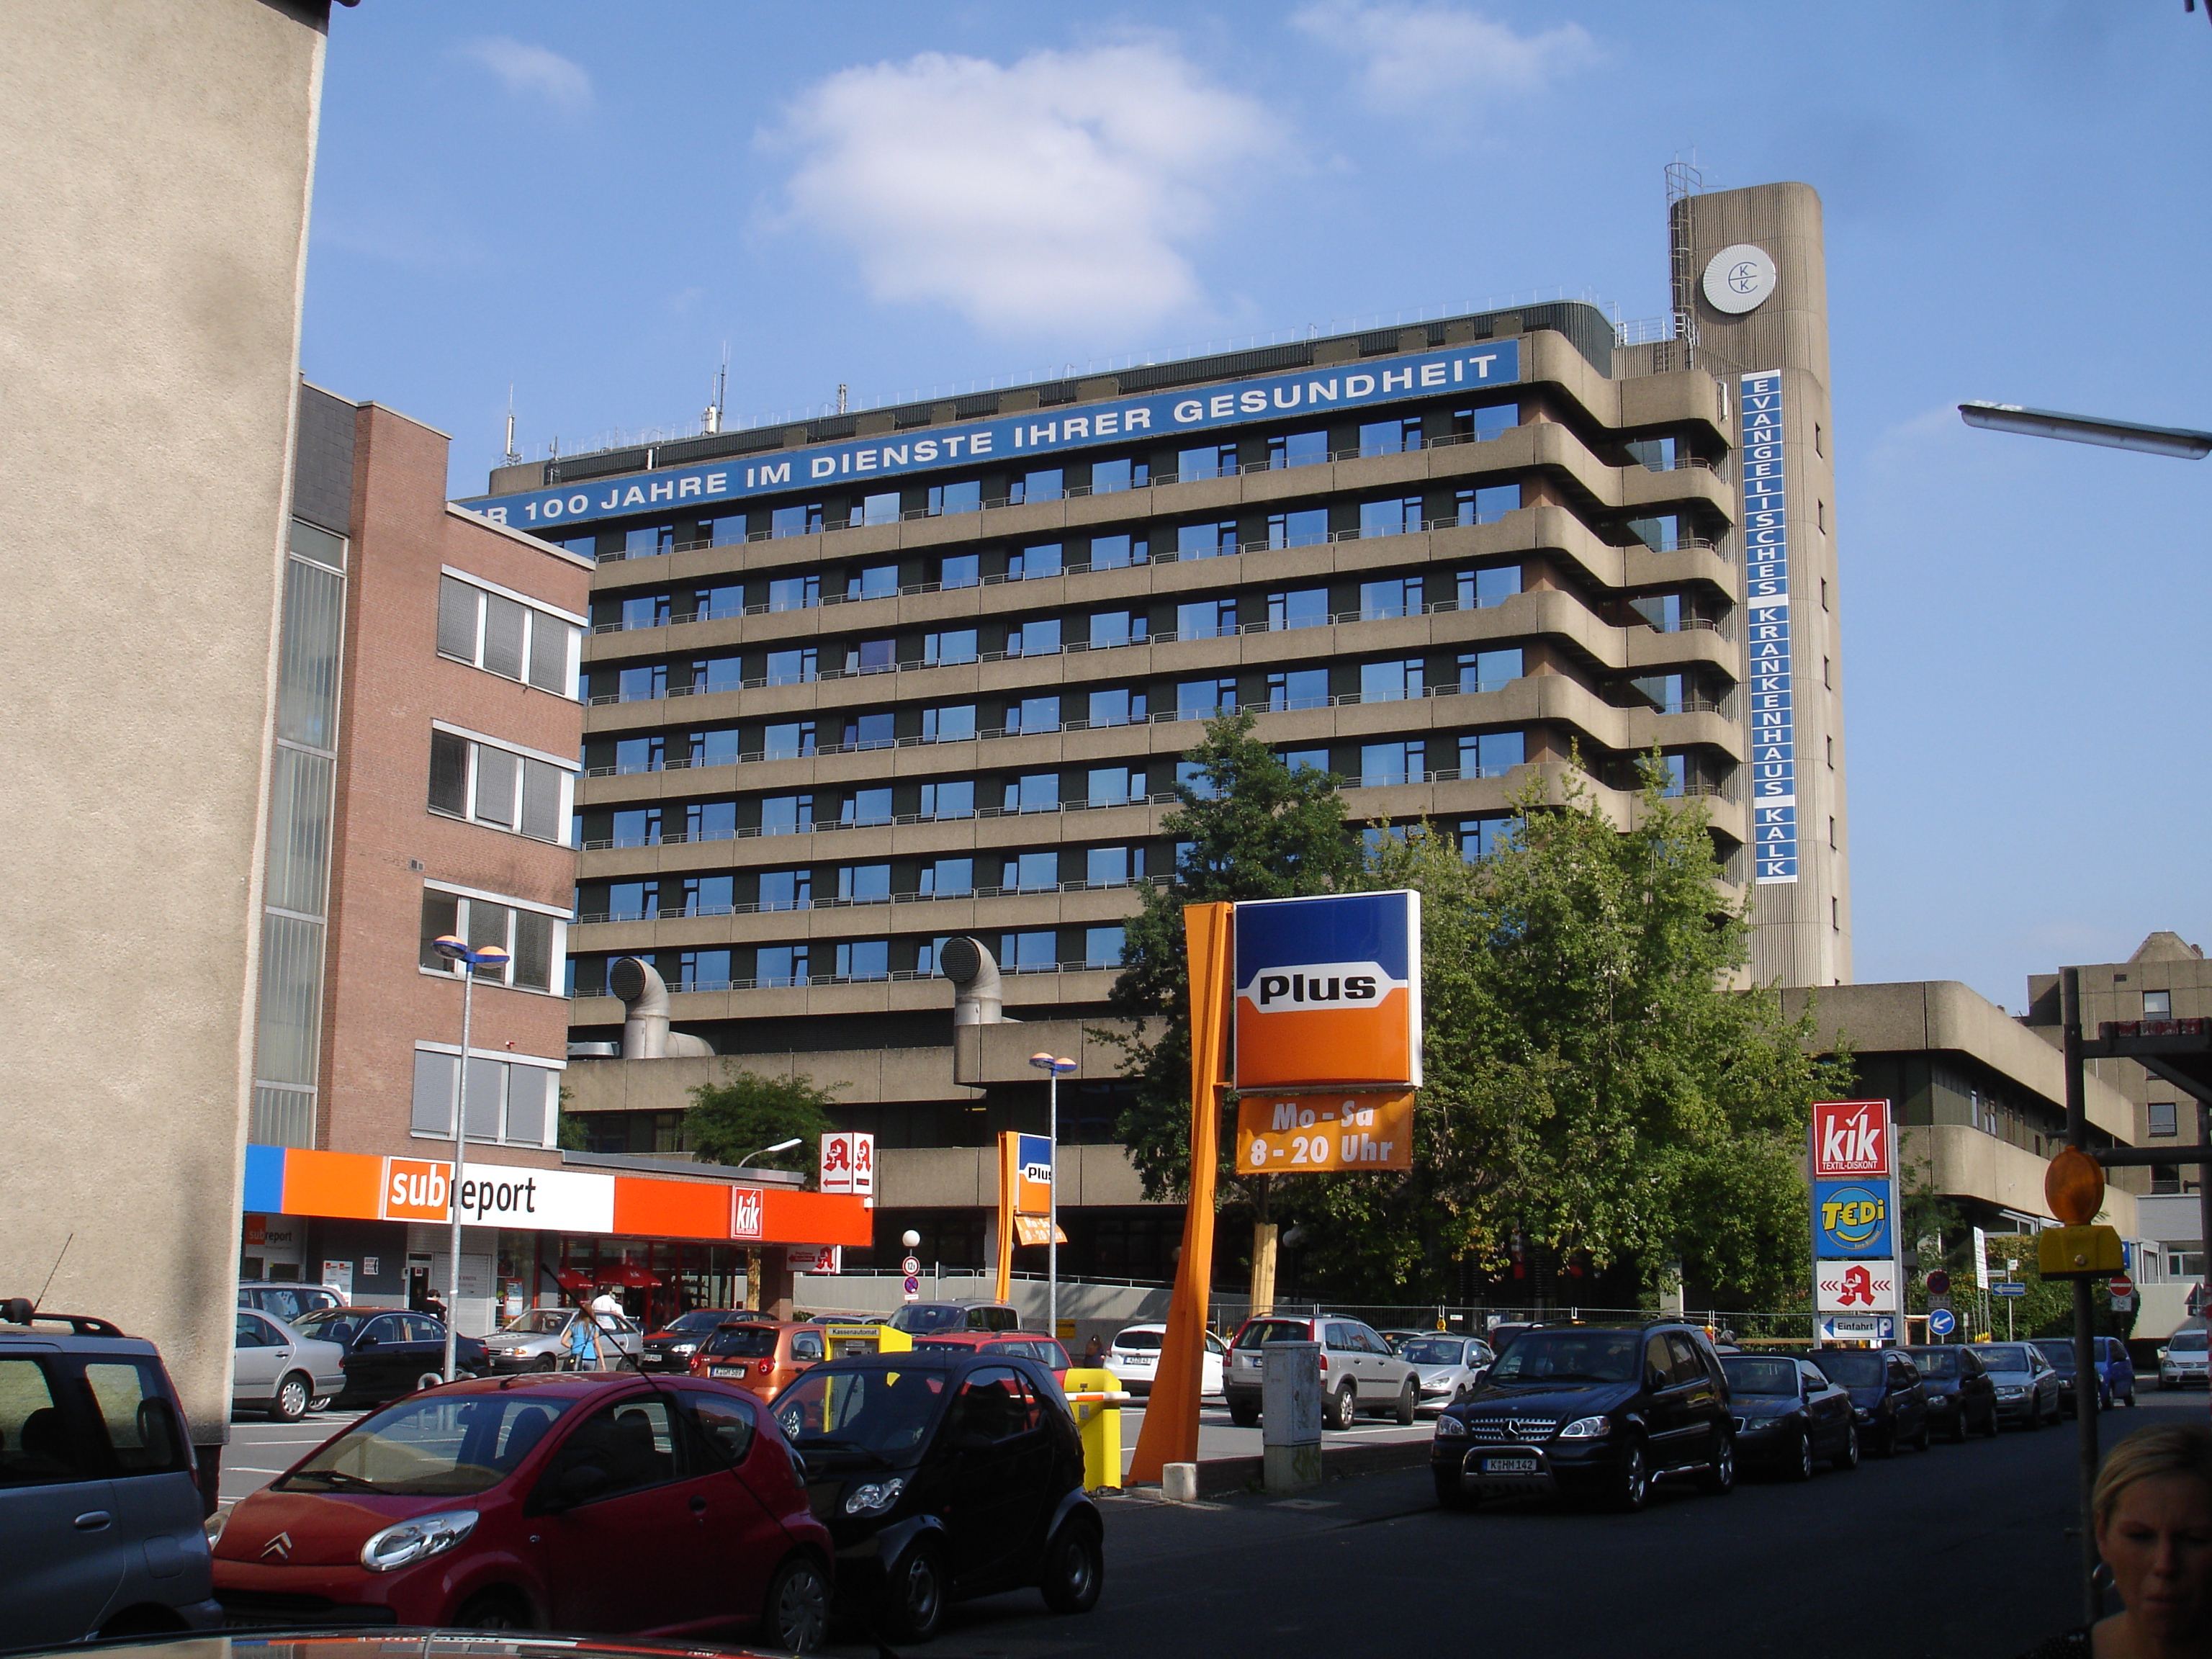 Bild 3 Evangelisches Krankenhaus Kalk gGmbH in Köln